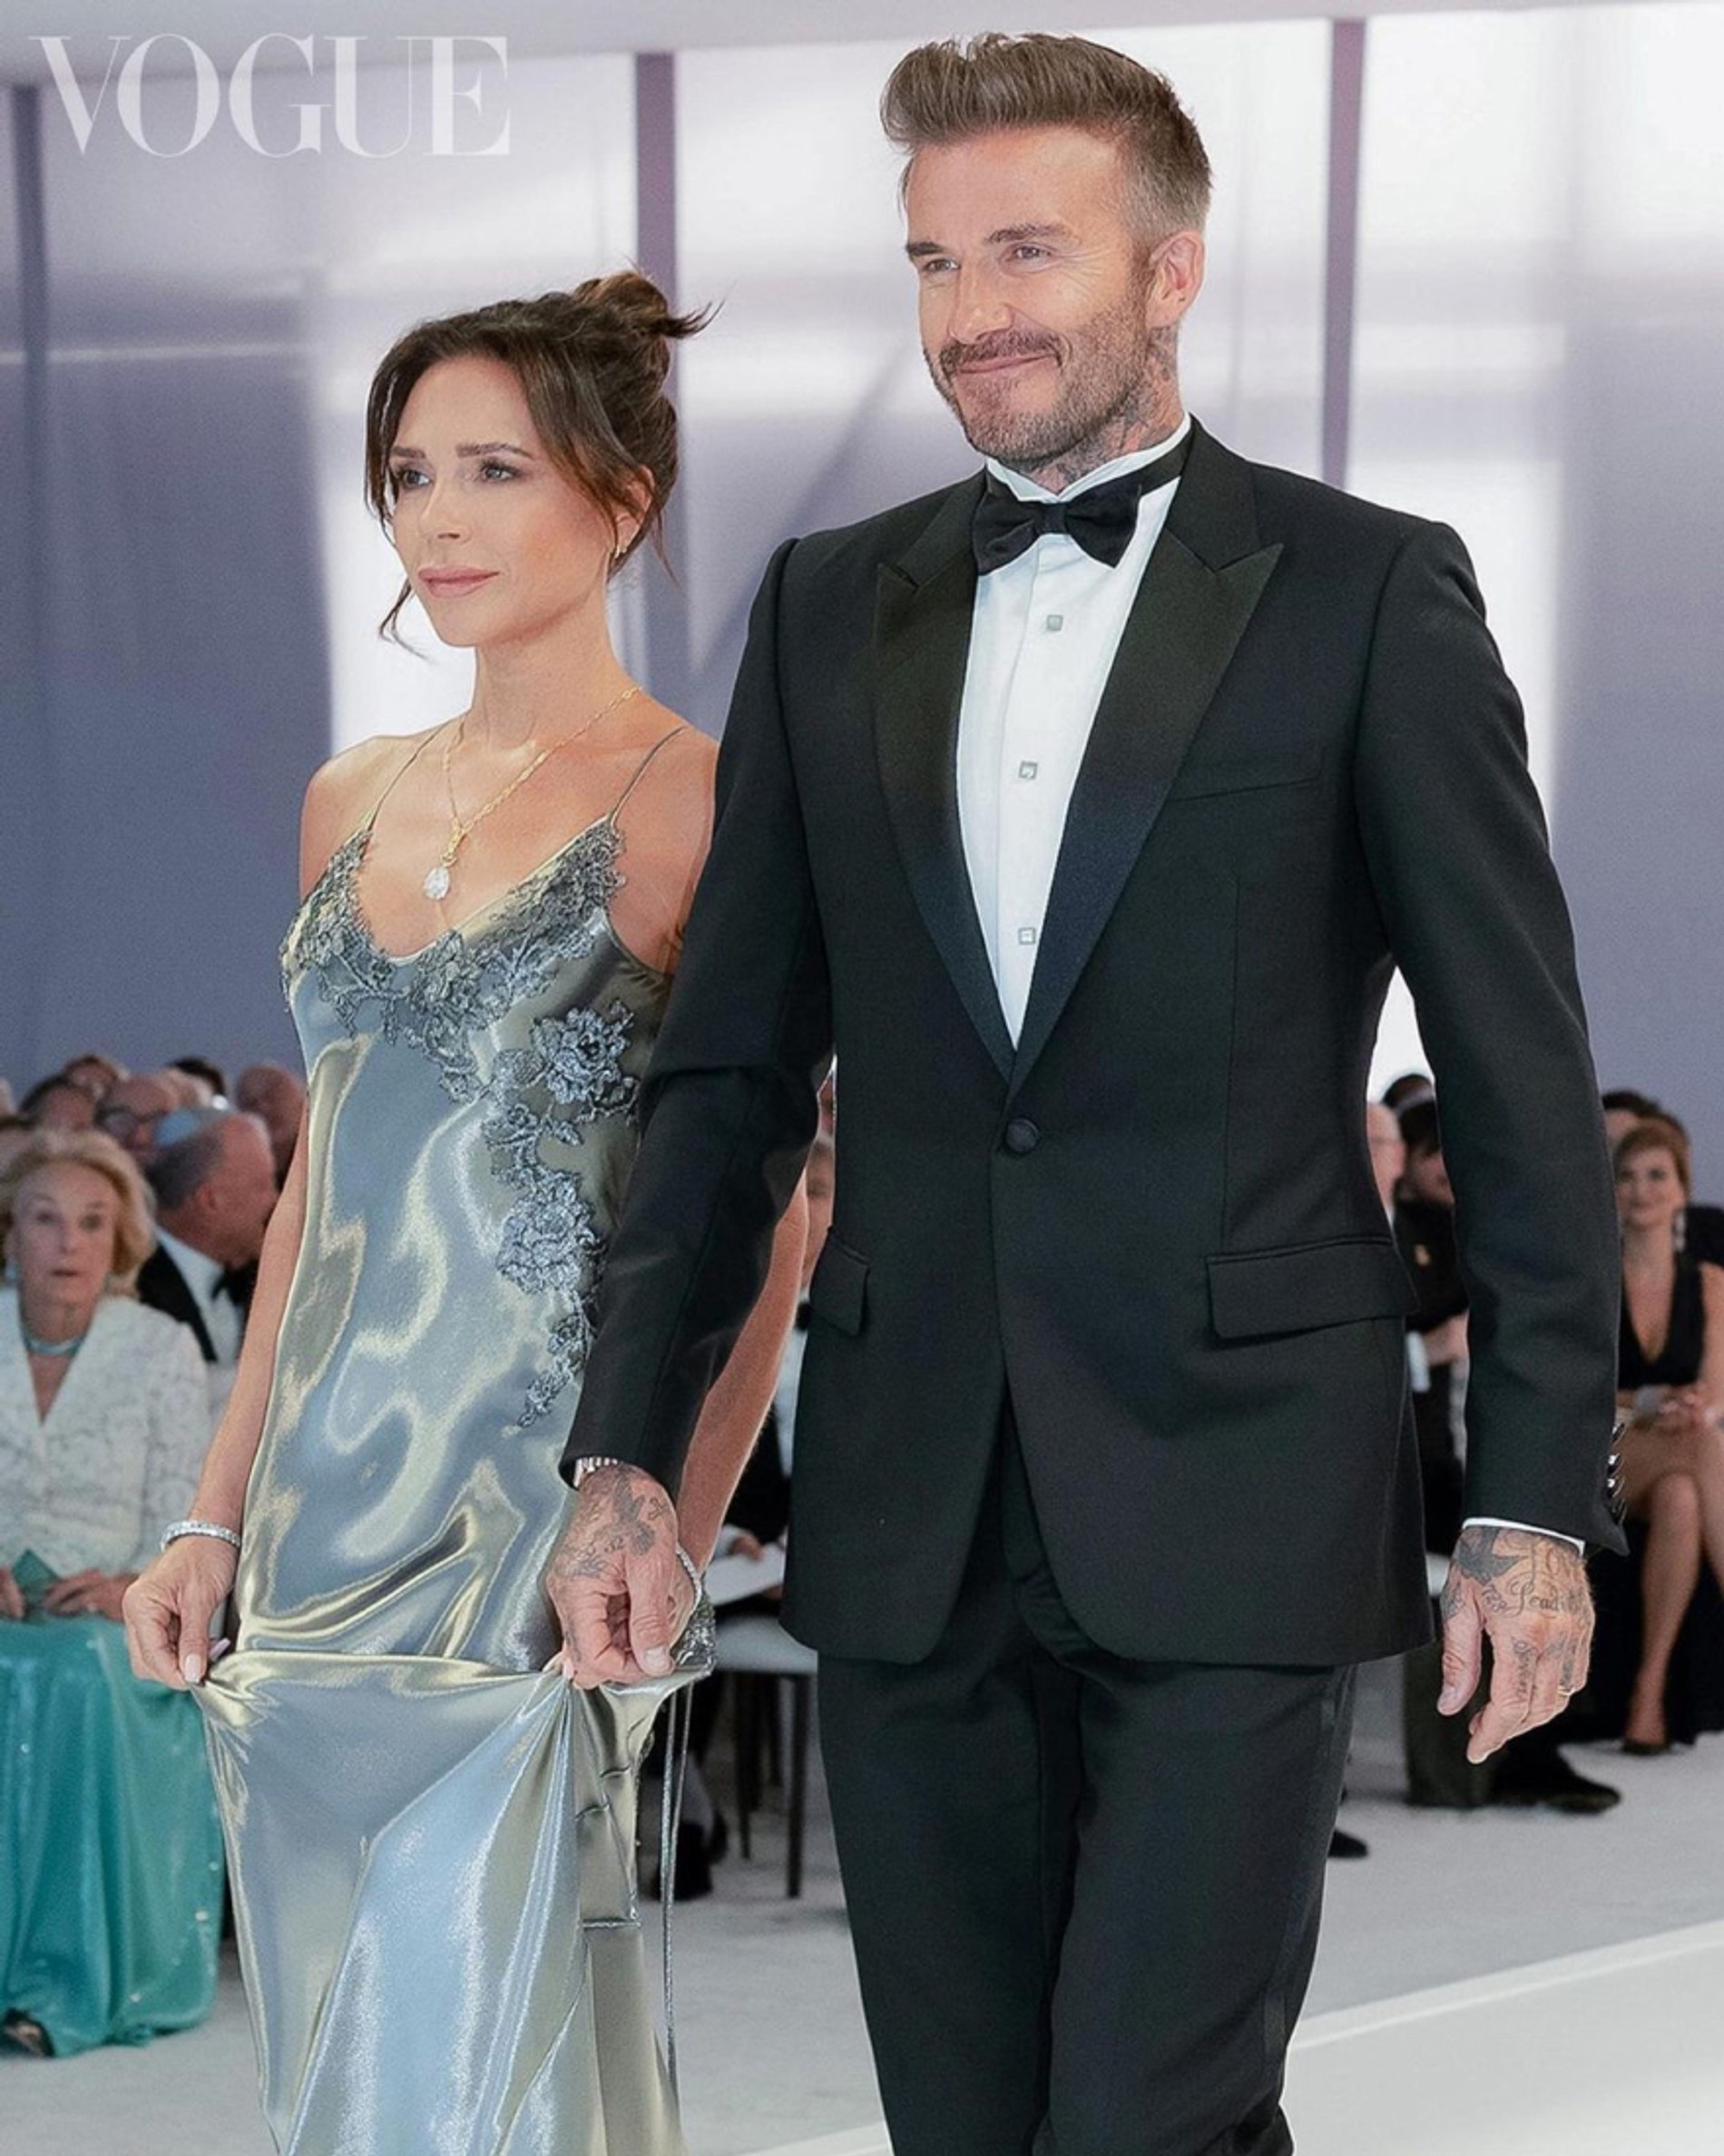 Виктория и Дэвид Бекхэм на свадьбе сына
Фото: Vogue